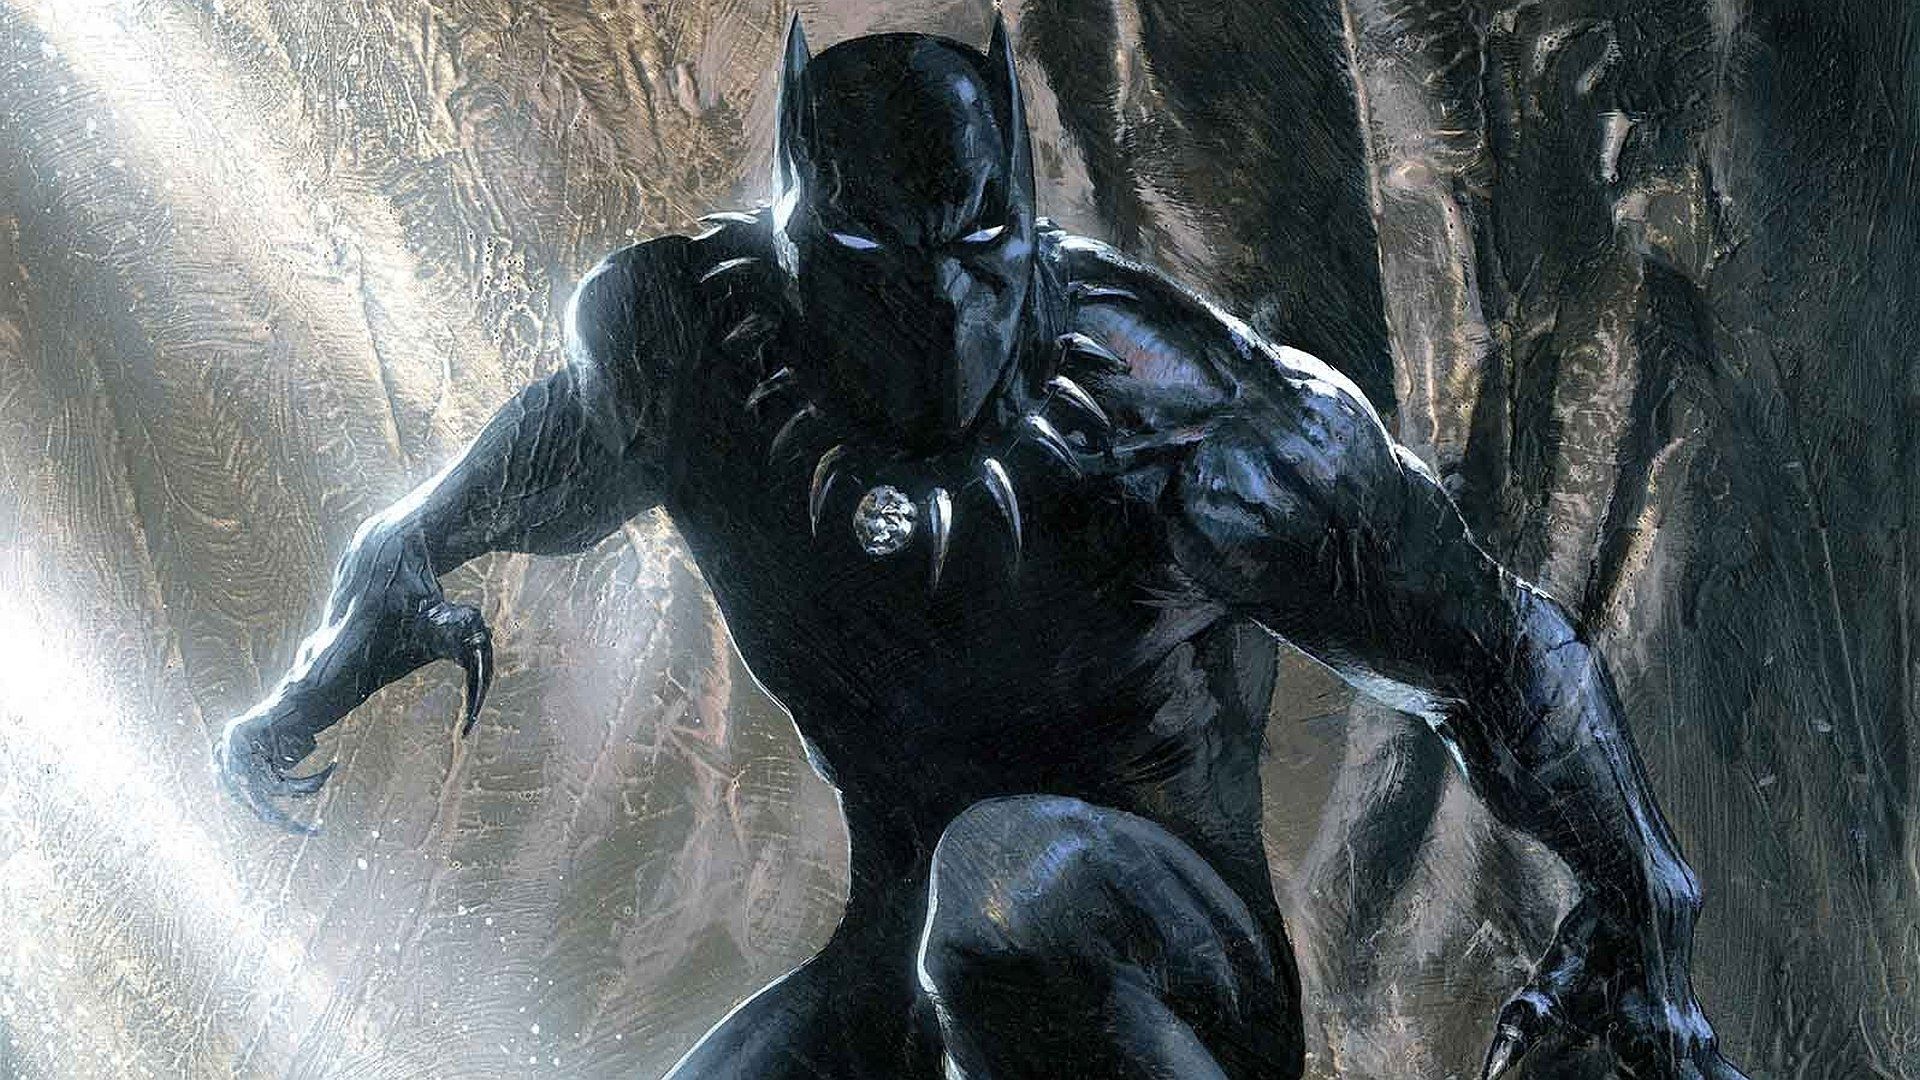 Black Panther Superhero Wallpaper Free Black Panther